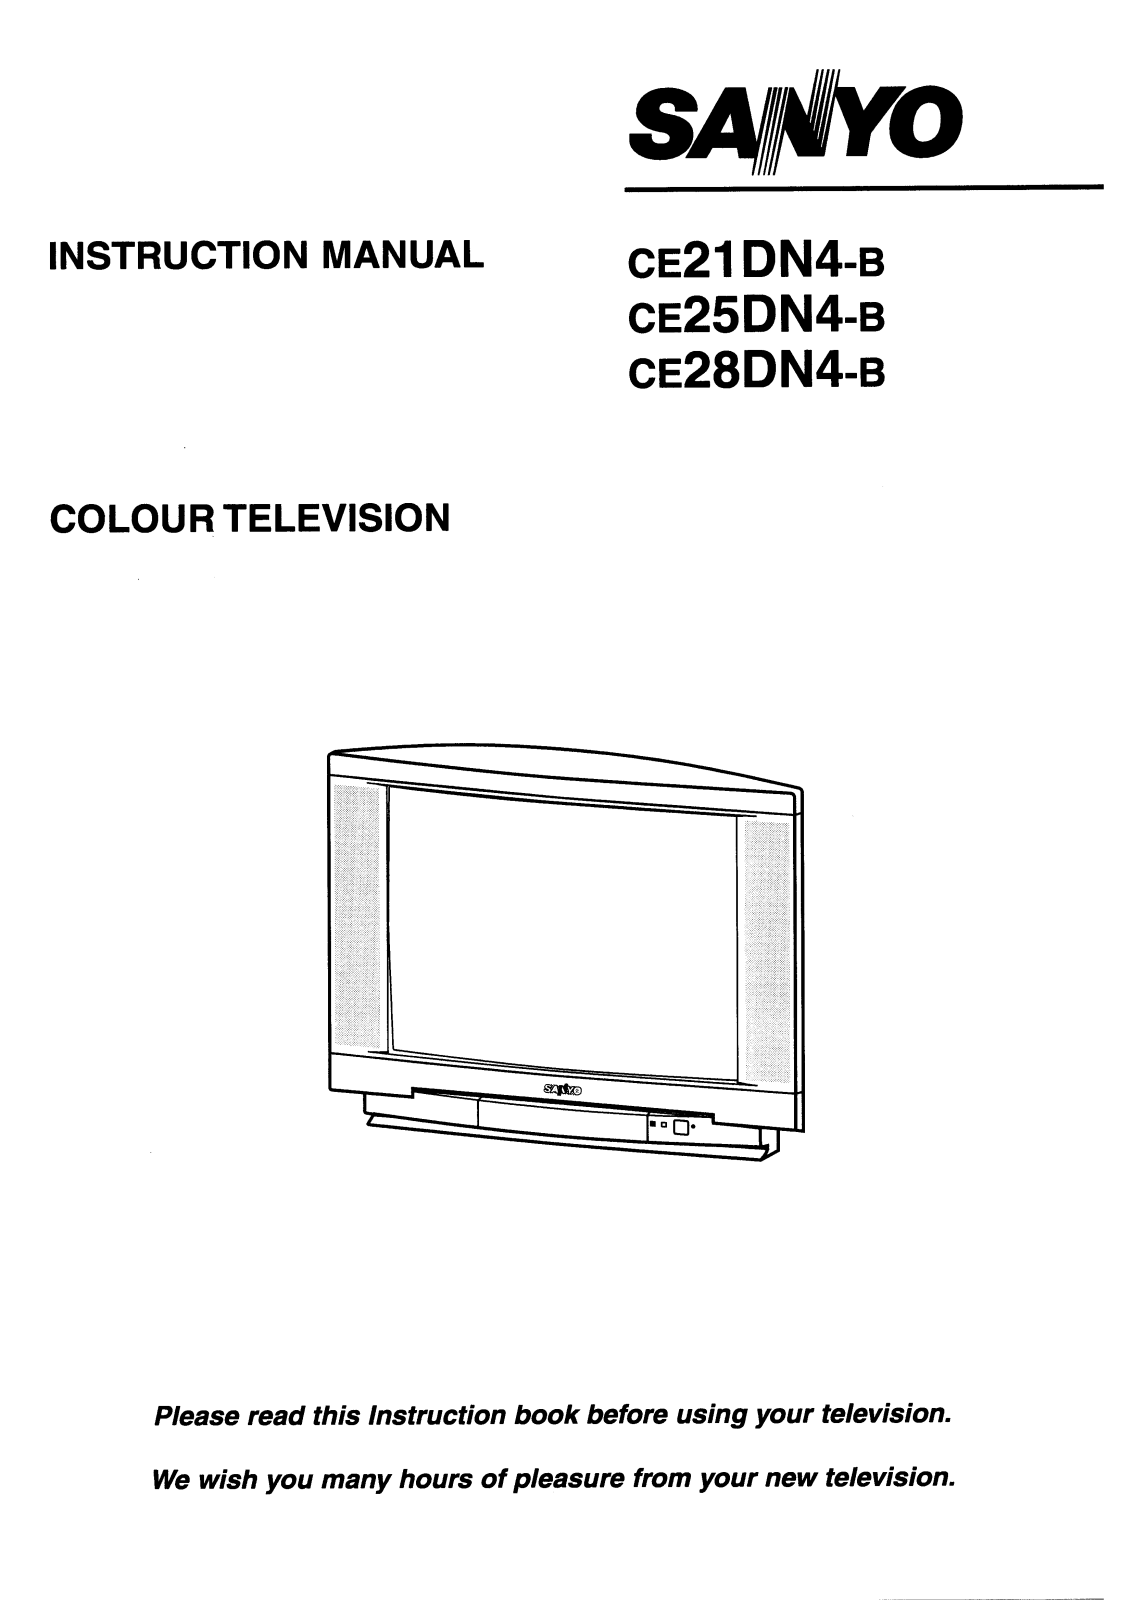 Sanyo CE28DN4-B, CE25DN4-B Instruction Manual